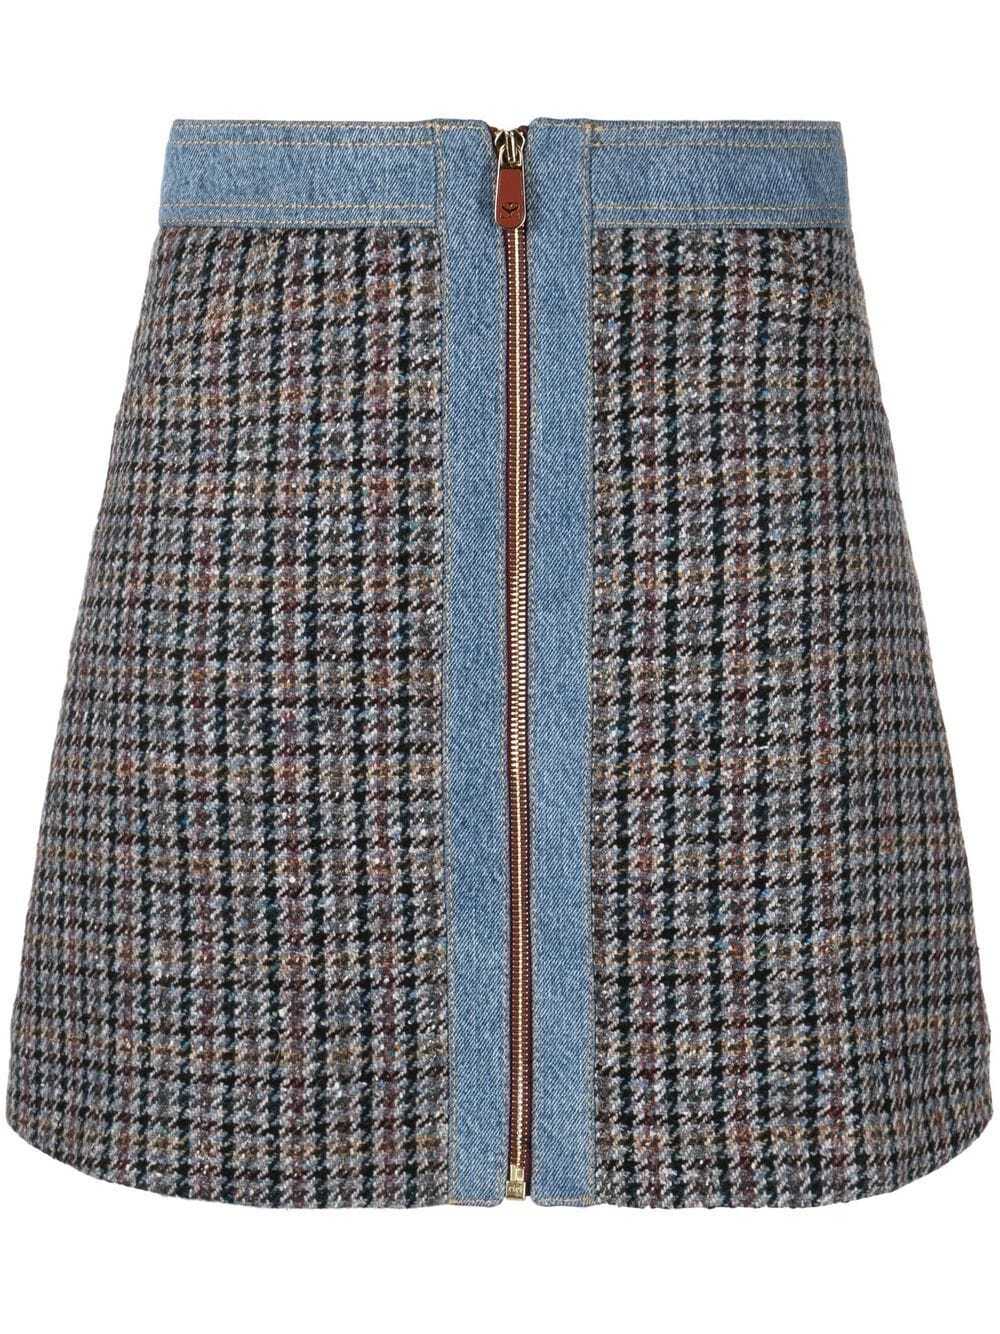 SANDRO Mary Jane tweed mini skirt - Blue